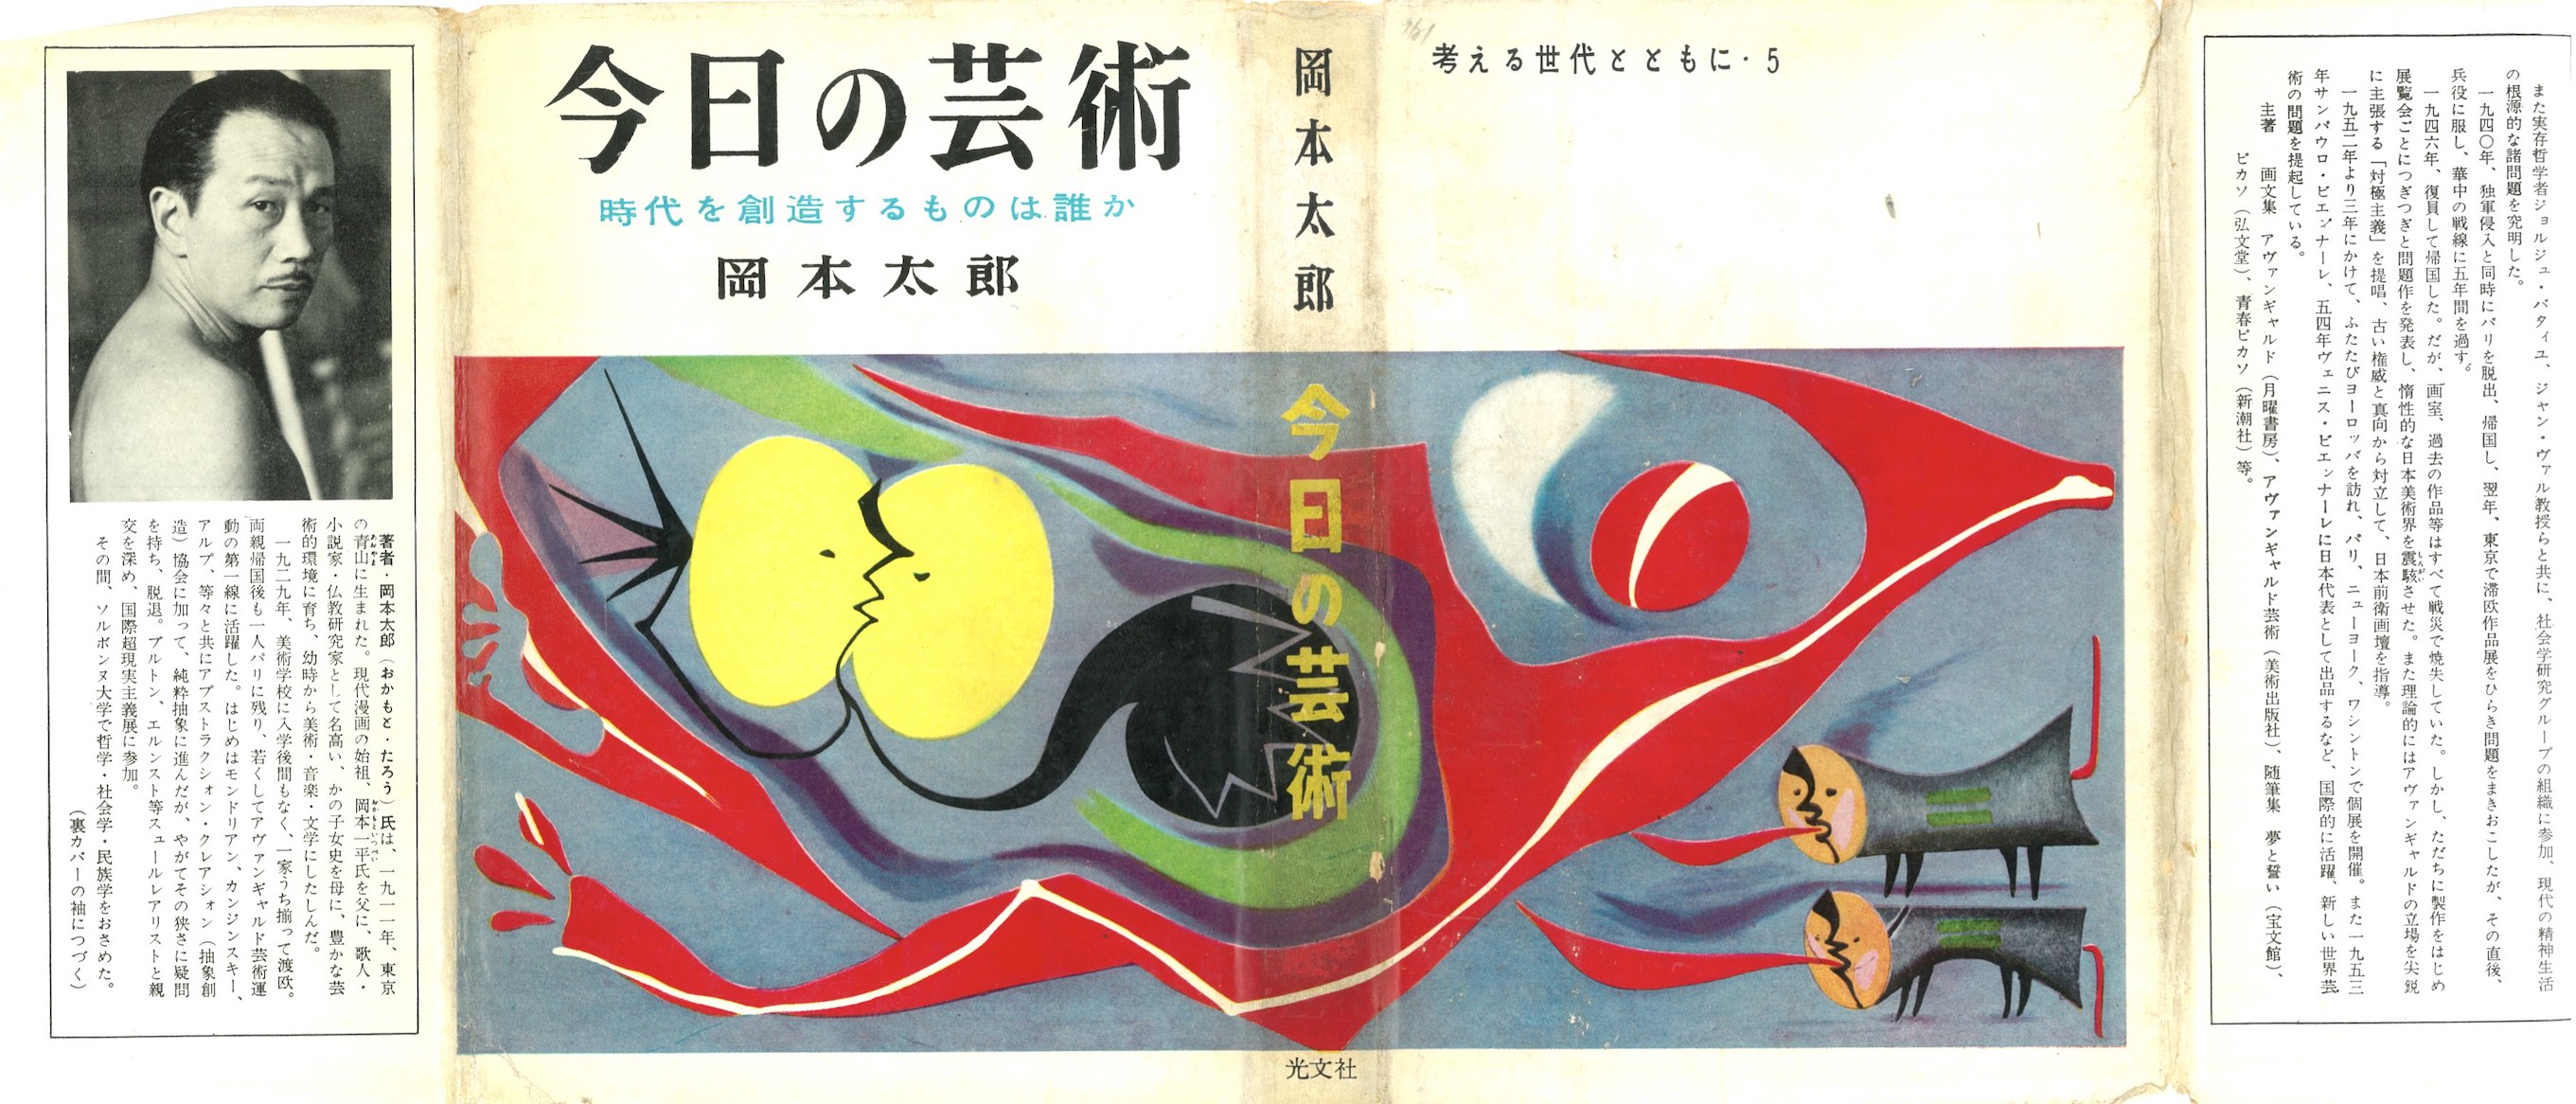 岡本太郎(1954)『今日の芸術』ノート